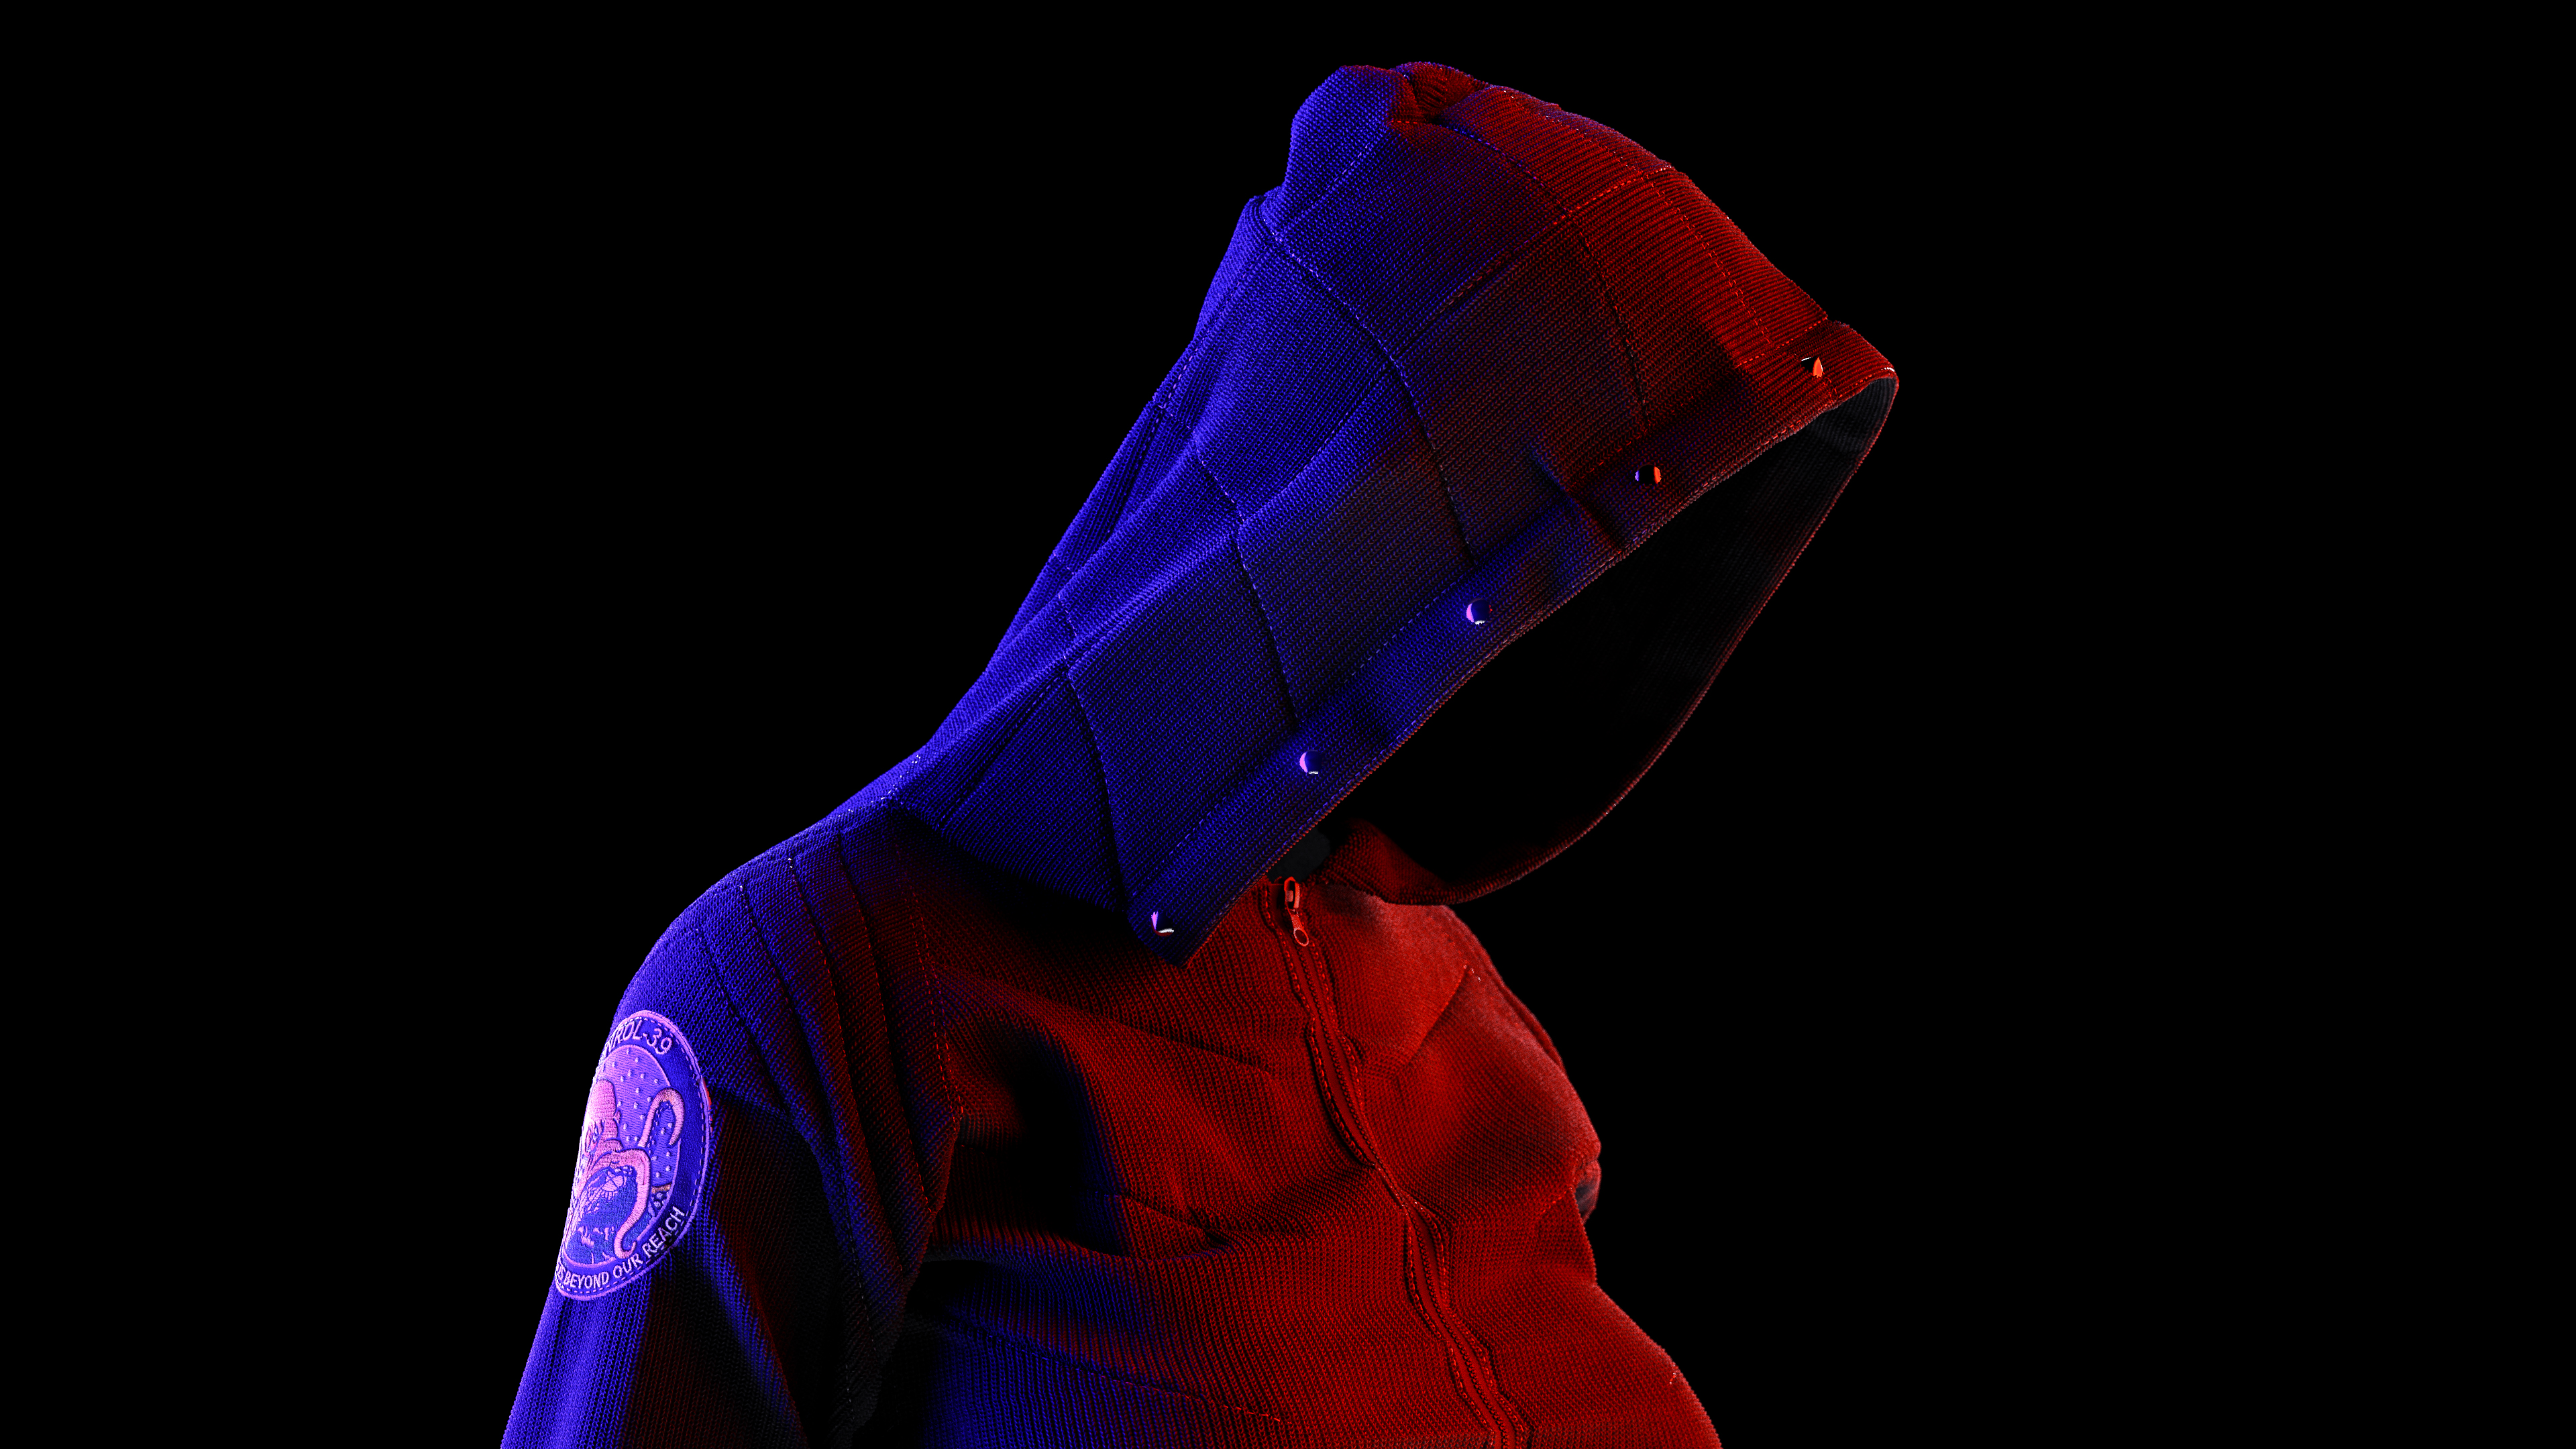 Neon Hoodie Guy - HD Wallpaper 